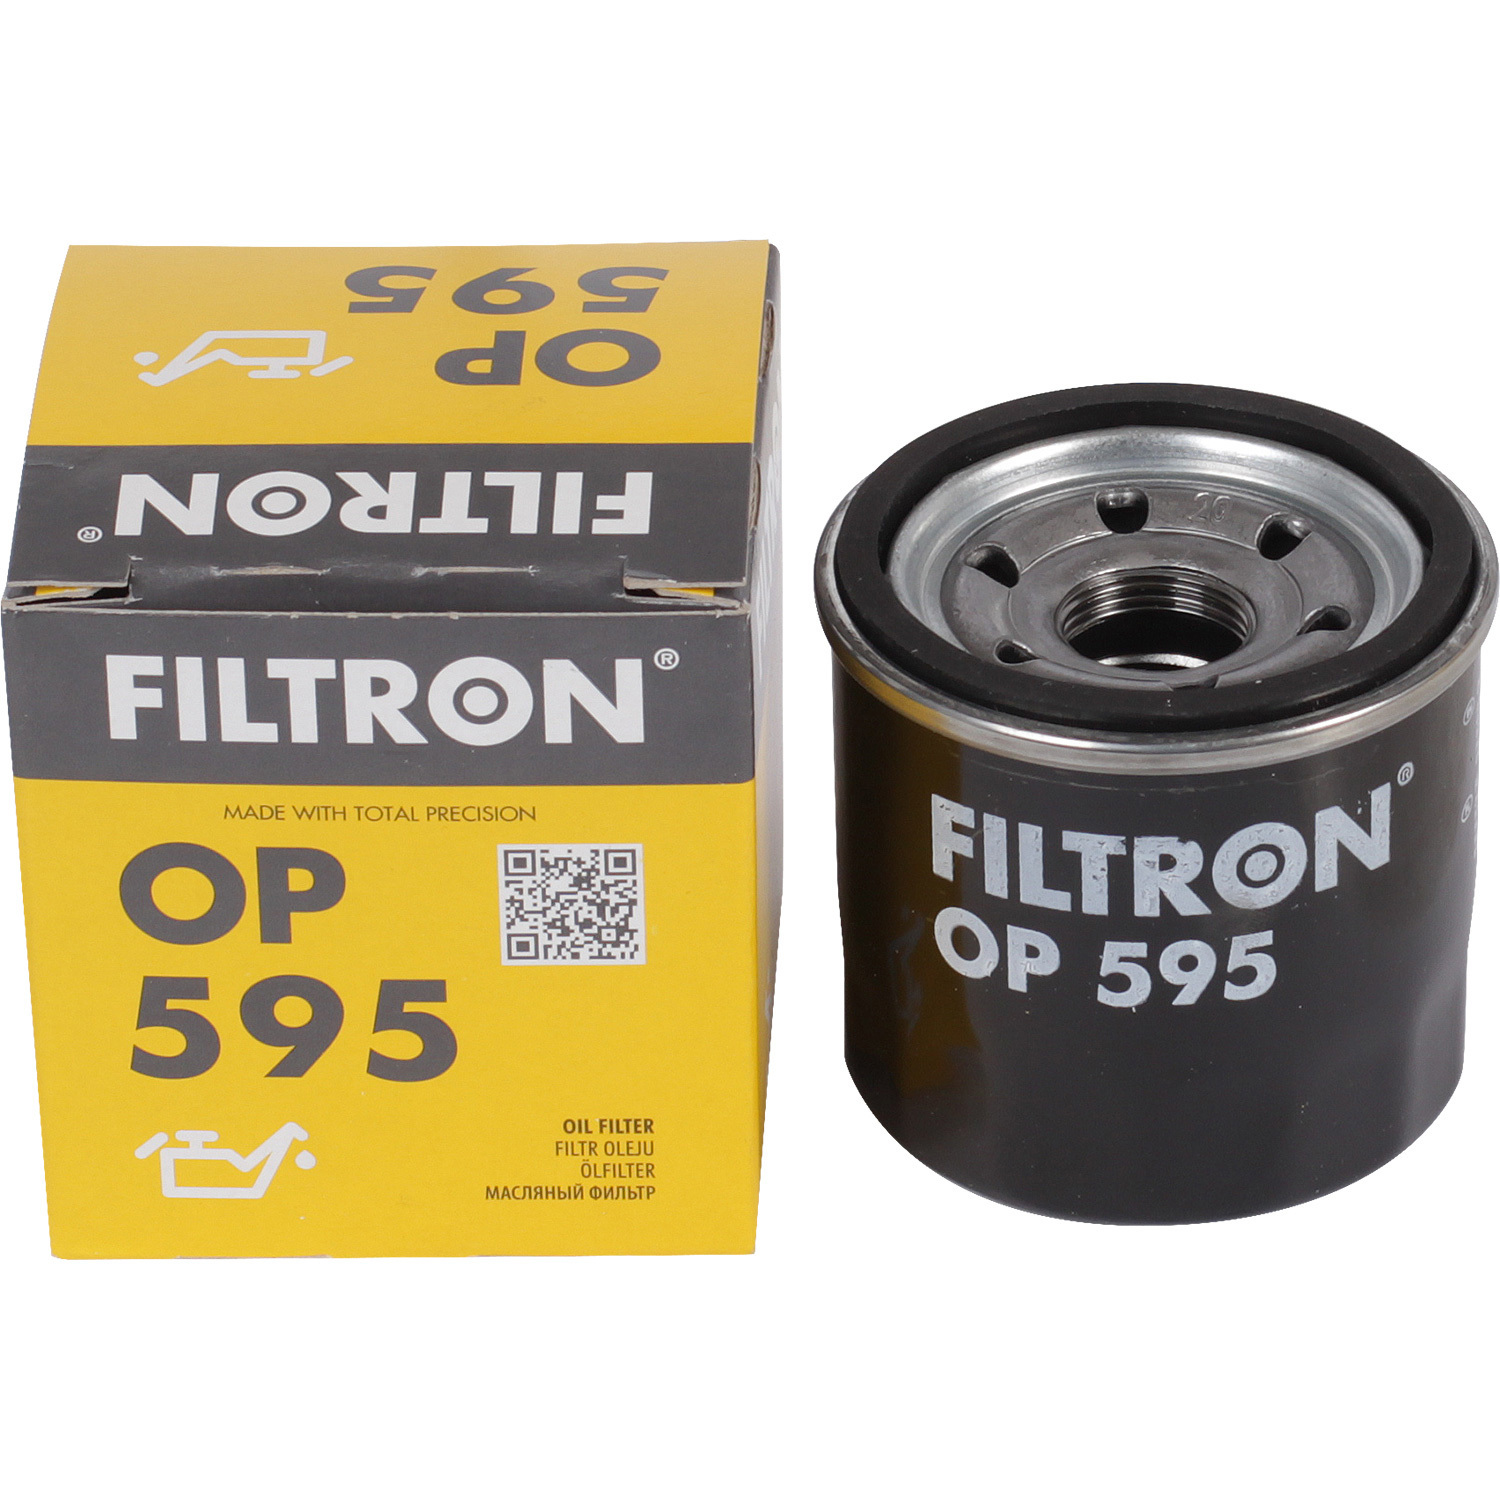 фильтры filtron фильтр масляный filtron op595 Фильтры Filtron Фильтр масляный Filtron OP595